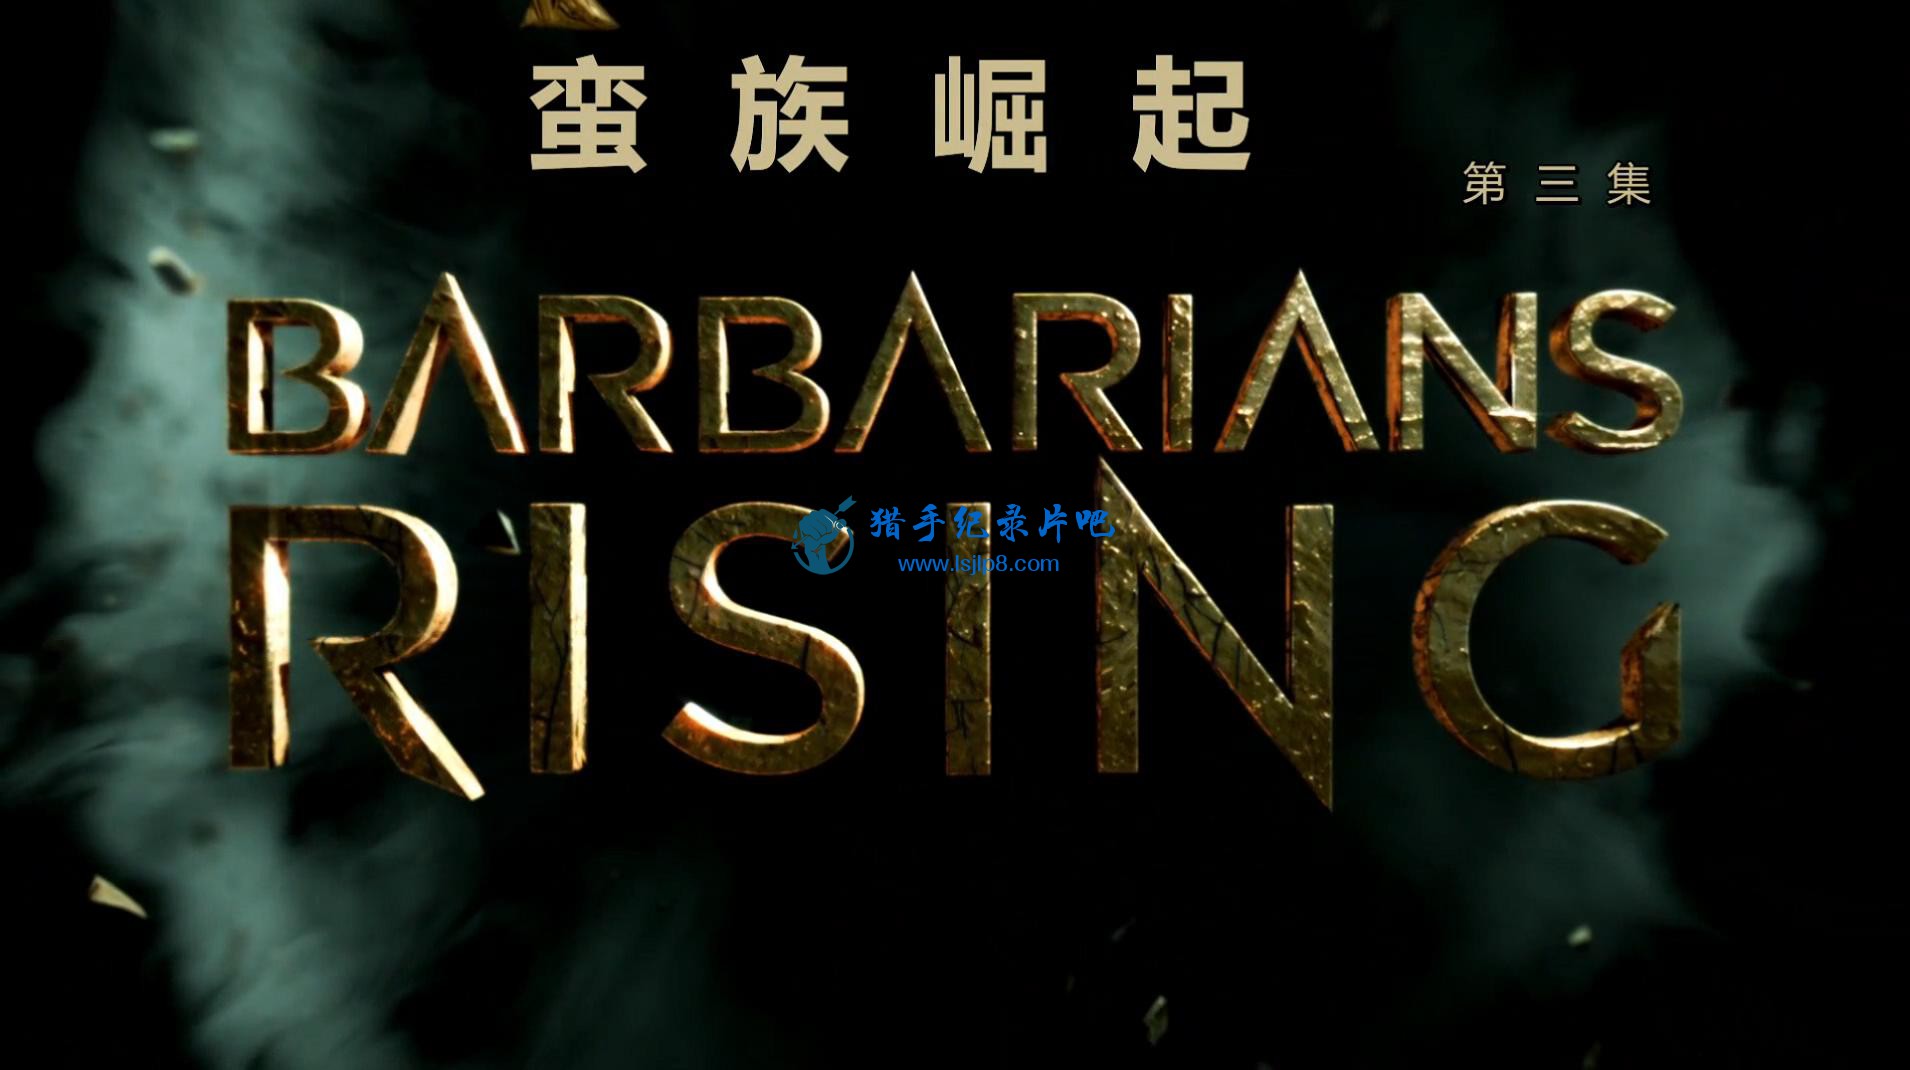 Barbarians.Rising.e03.1080p.chs_eng.luckydag_20180501121017.JPG